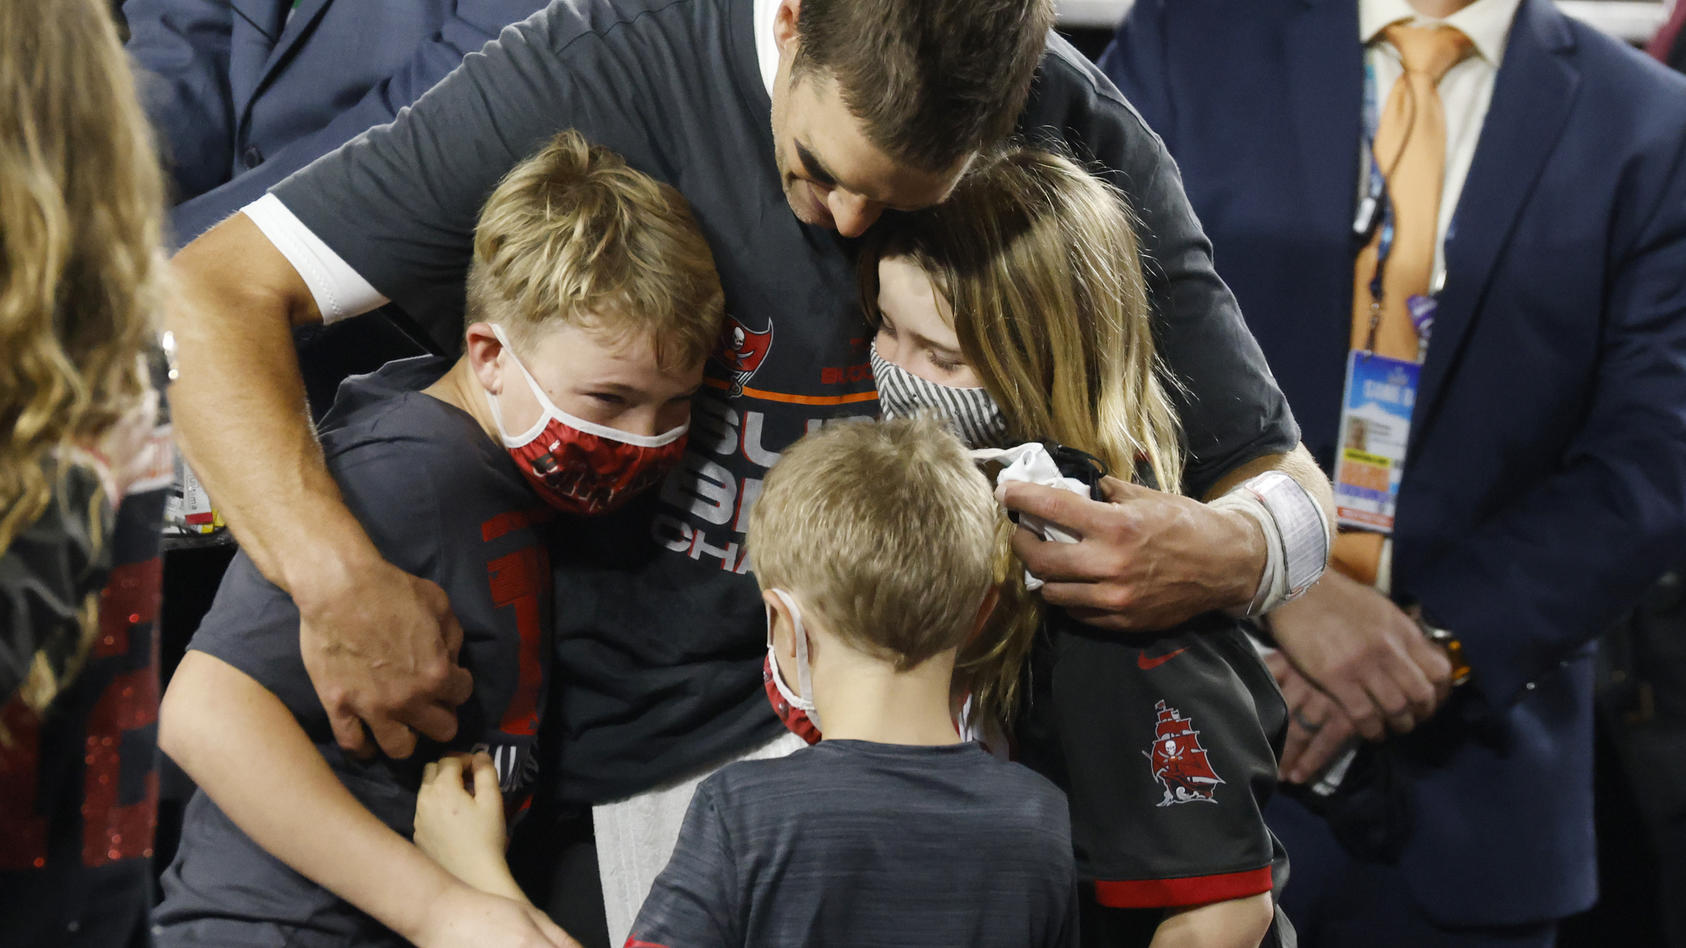 Papa ist der Größte! Tom Brady schließt seine Kinder nach dem Sieg in die Arme.